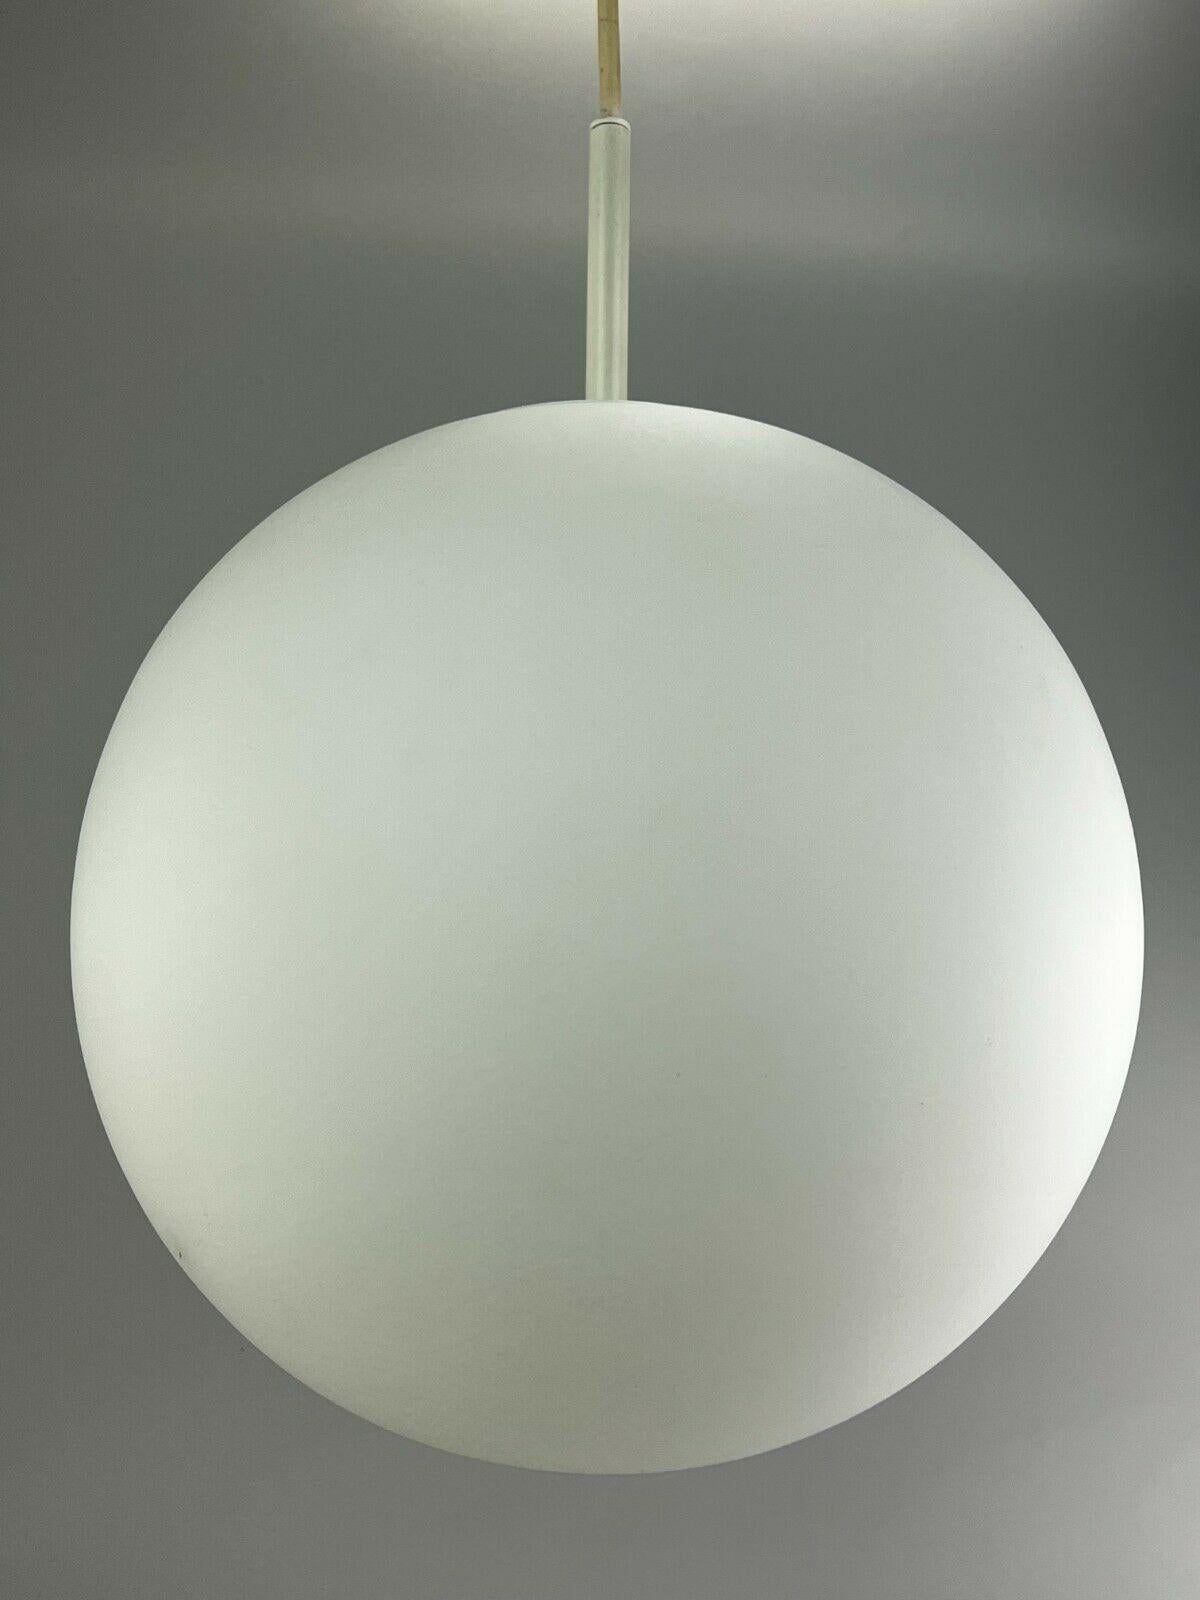 German Xxl 60s 70s Lamp Light Ceiling Lamp Limburg Spherical Lamp Ball Design  For Sale